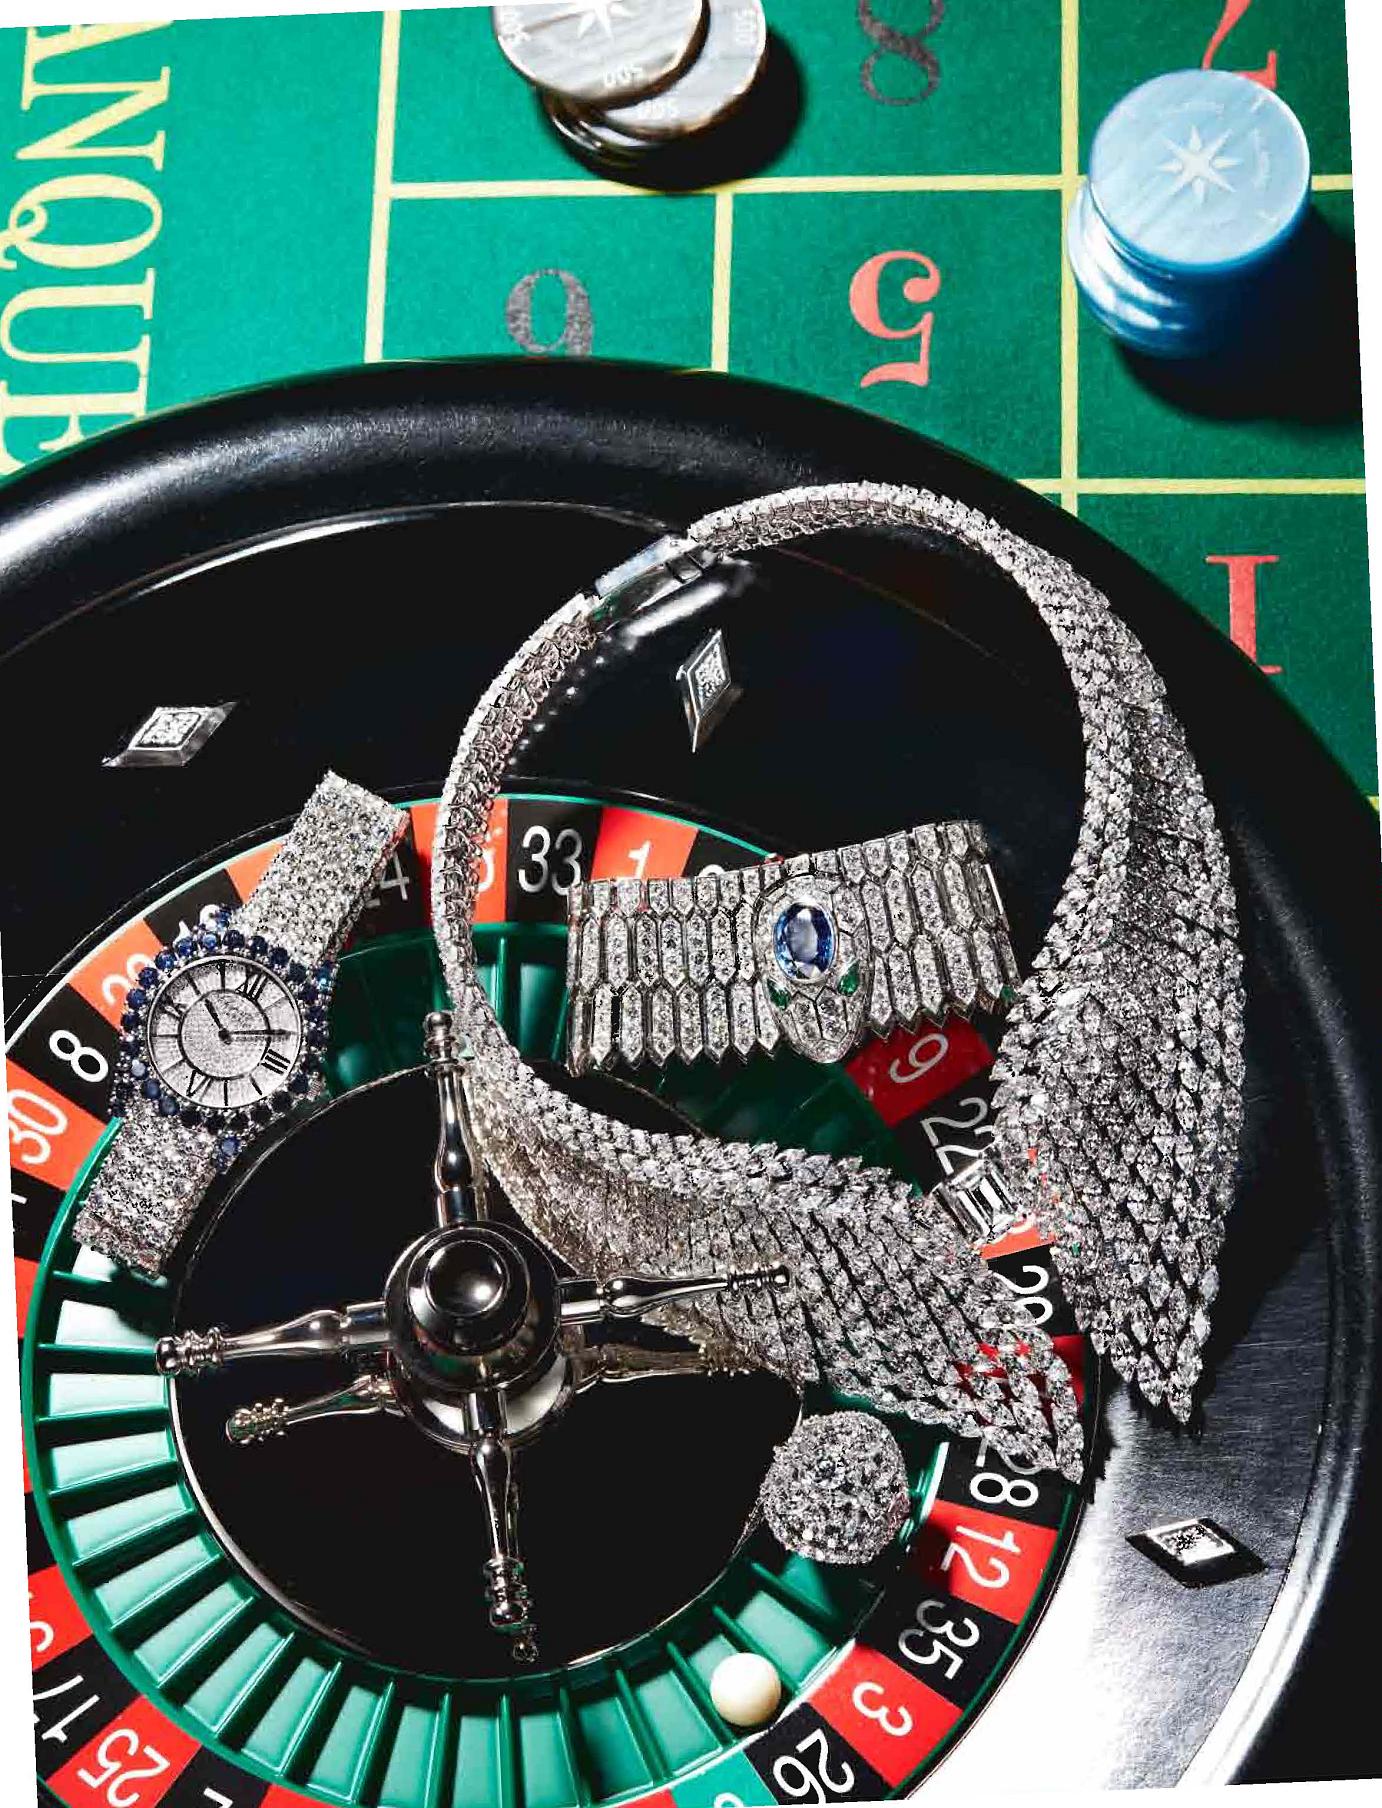 Grazia-Magazine---Casino-Royale